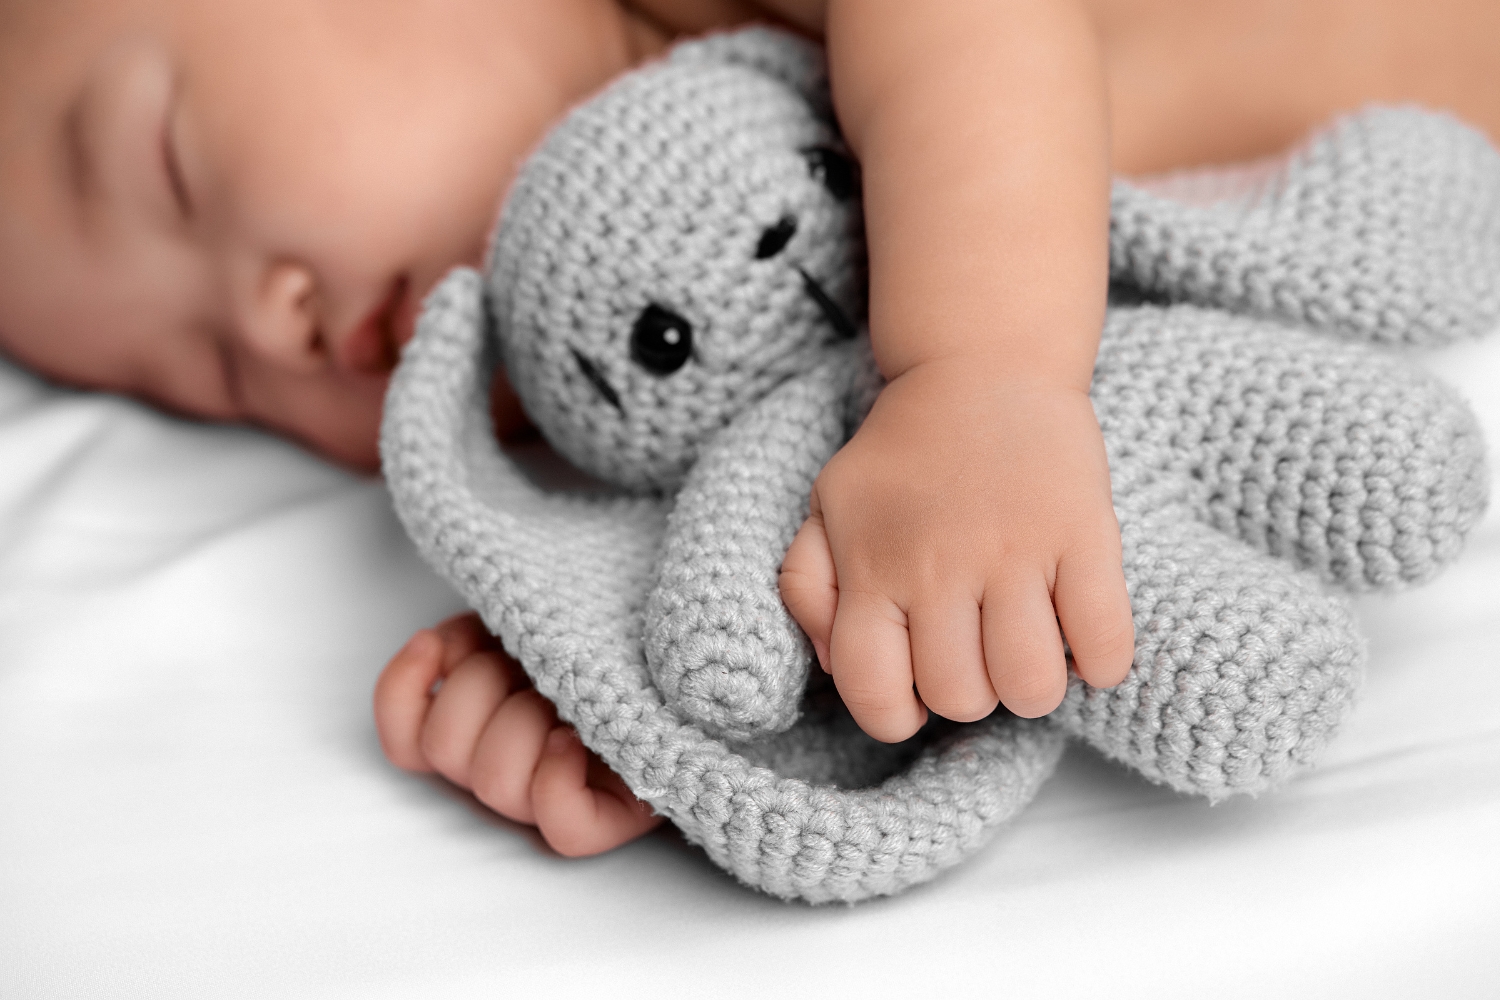 Tóm lại, giấc ngủ đóng vai trò quan trọng trong quá trình phát triển của trẻ em, và việc chọn lựa đồ chơi phù hợp sẽ giúp bé có giấc ngủ ngon và sâu, từ đó tối ưu hóa sự phát triển của bé.